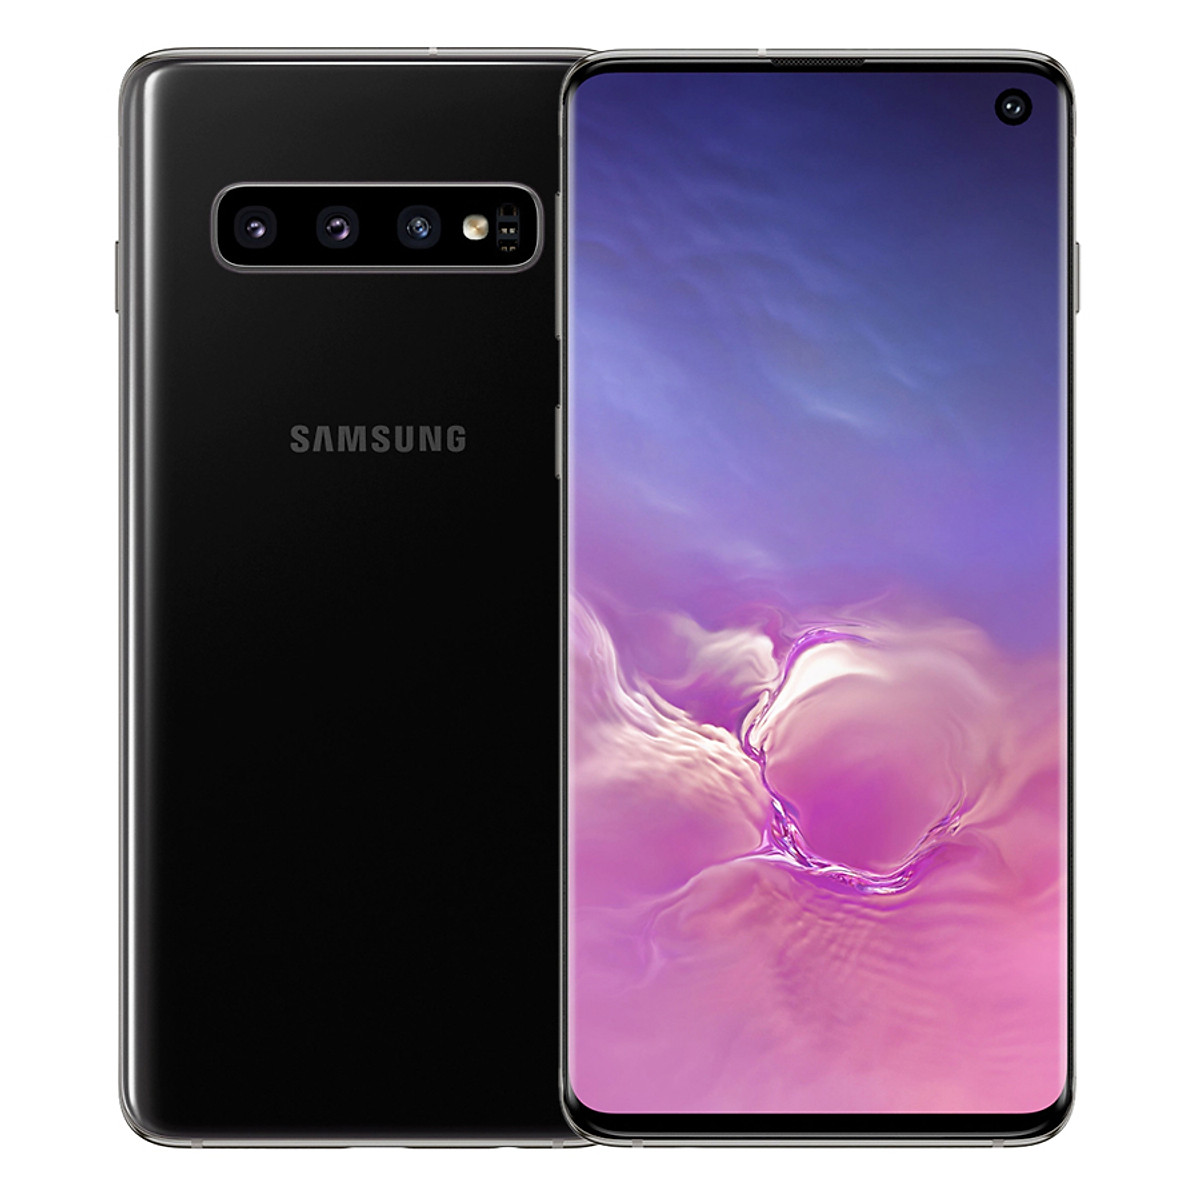 TOP Các điện thoại Samsung Galaxy giảm giá HOT - 10